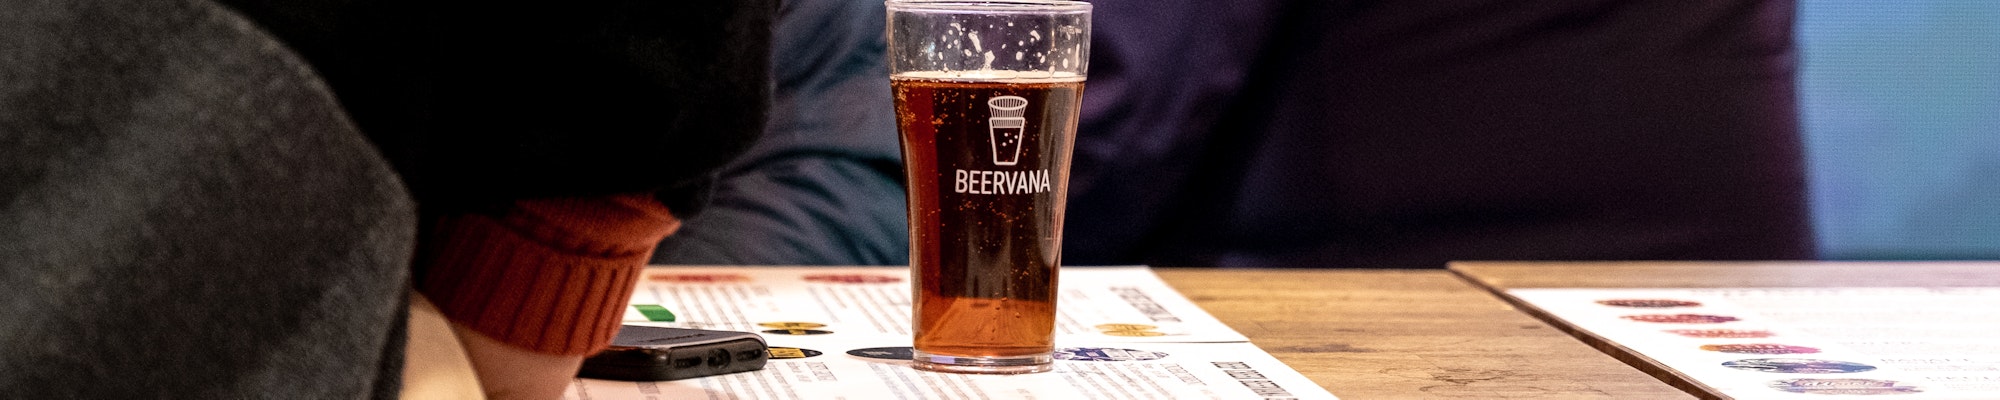 Beervana Glass